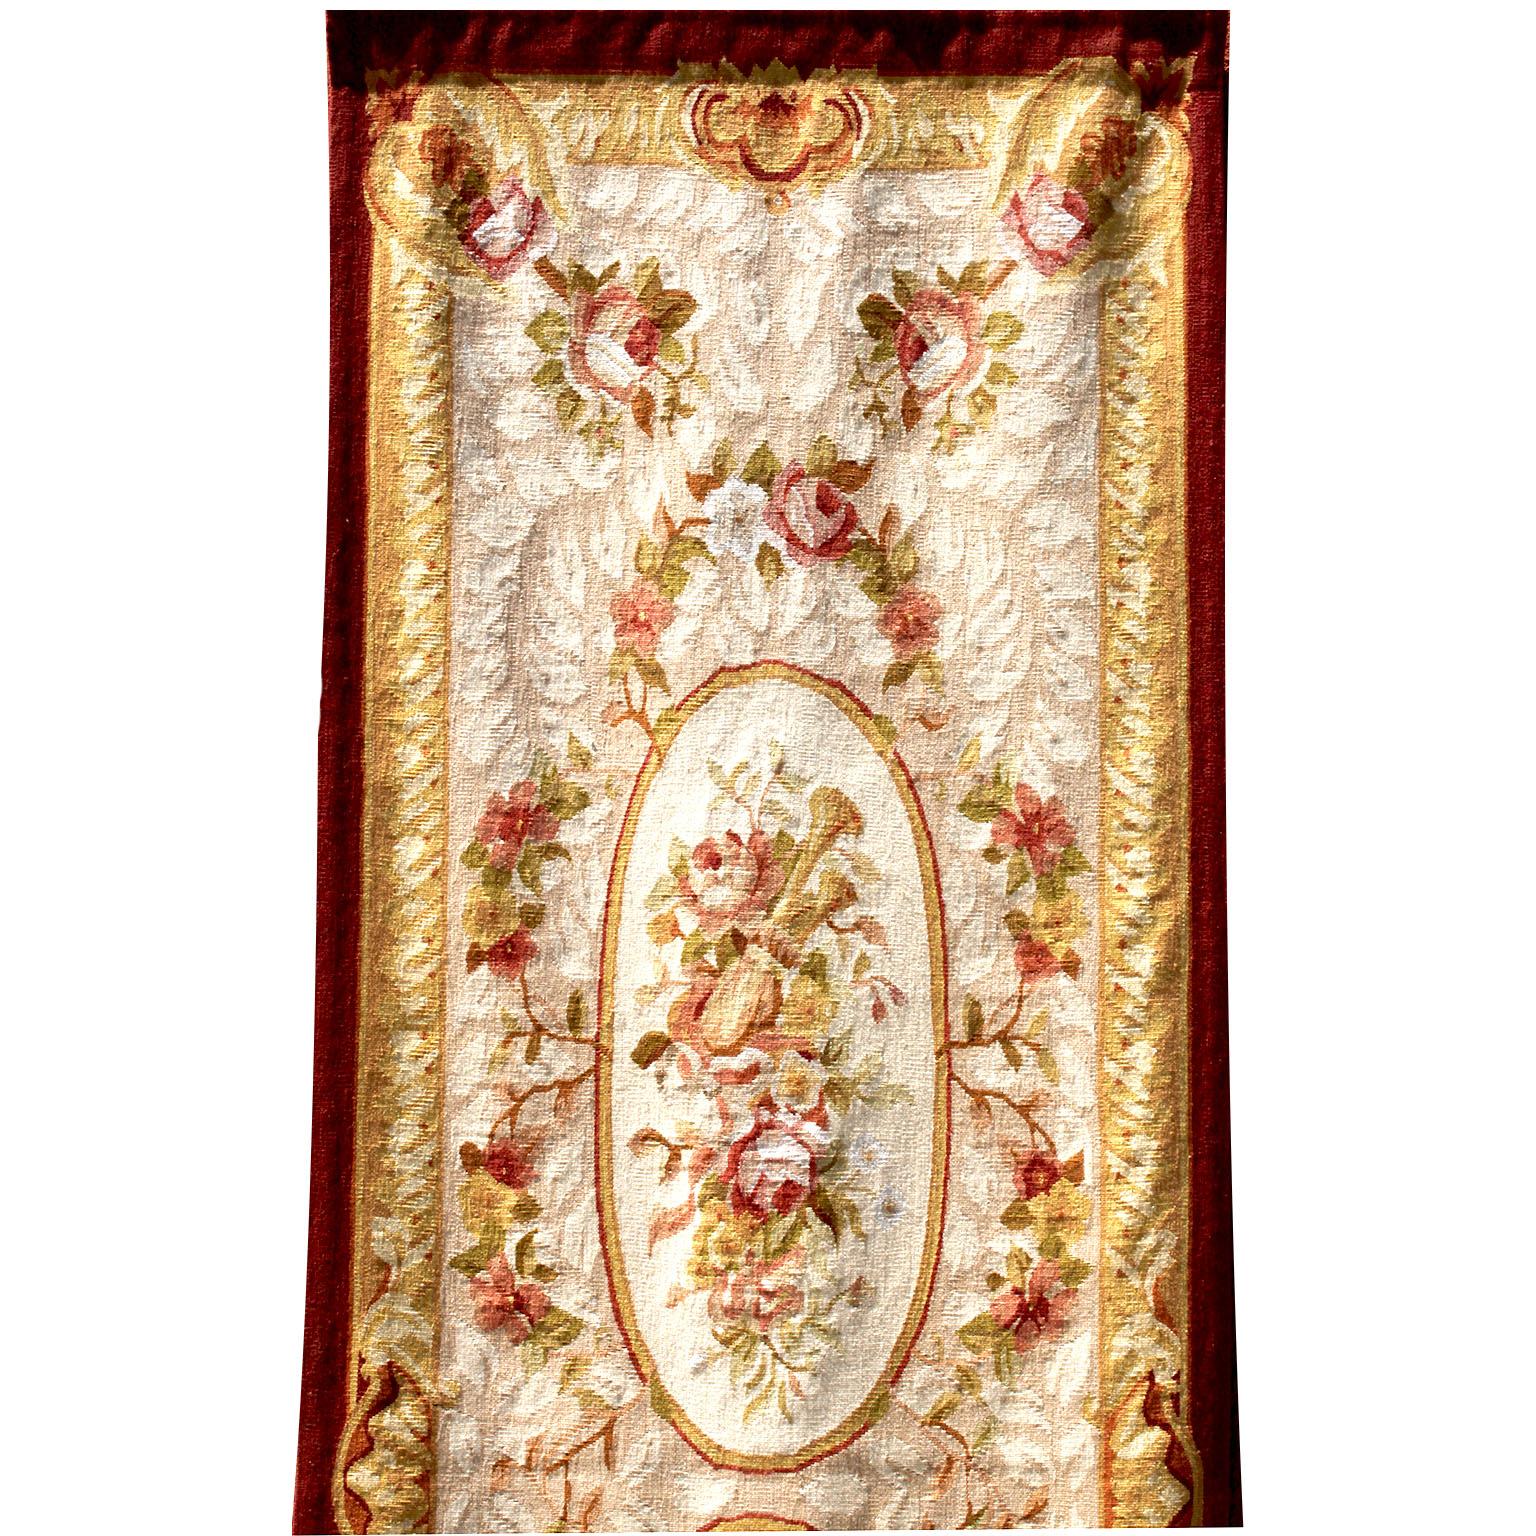 Panneau de tapisserie d'Aubusson de style Louis XV du 19e siècle. Le fragment de tapisserie allongé présente un motif floral de bouquets et de brins de roses, avec deux panneaux ovales centrés par des bouquets floraux et une bordure d'acanthes et de